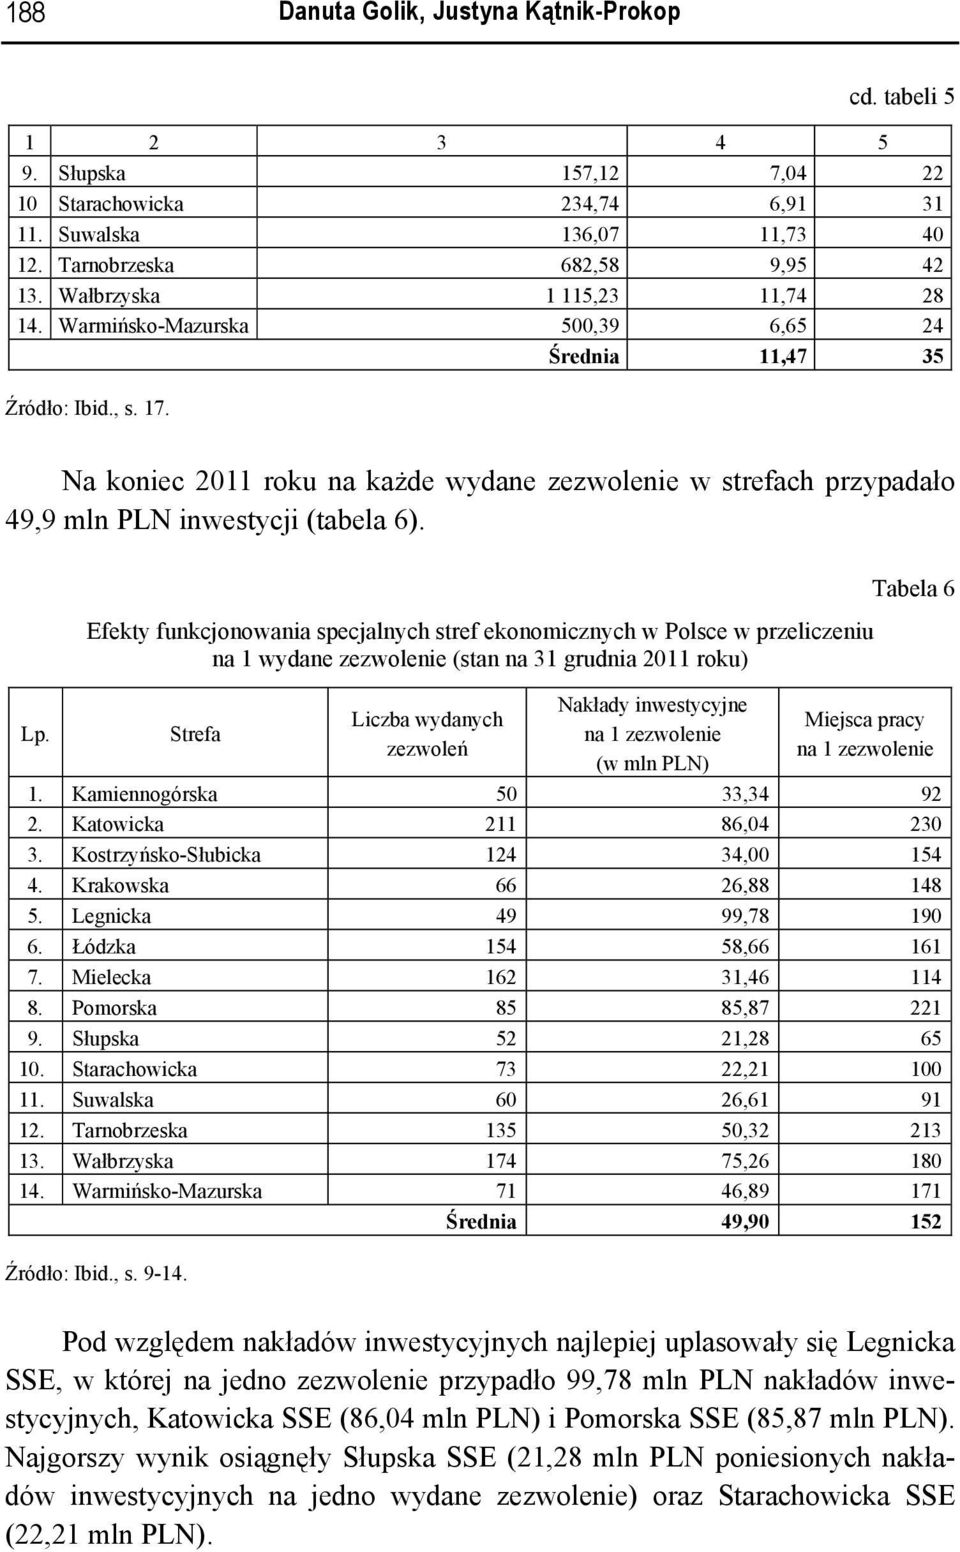 Na koniec 2011 roku na każde wydane zezwolenie w strefach przypadało 49,9 mln PLN inwestycji (tabela 6). Lp.